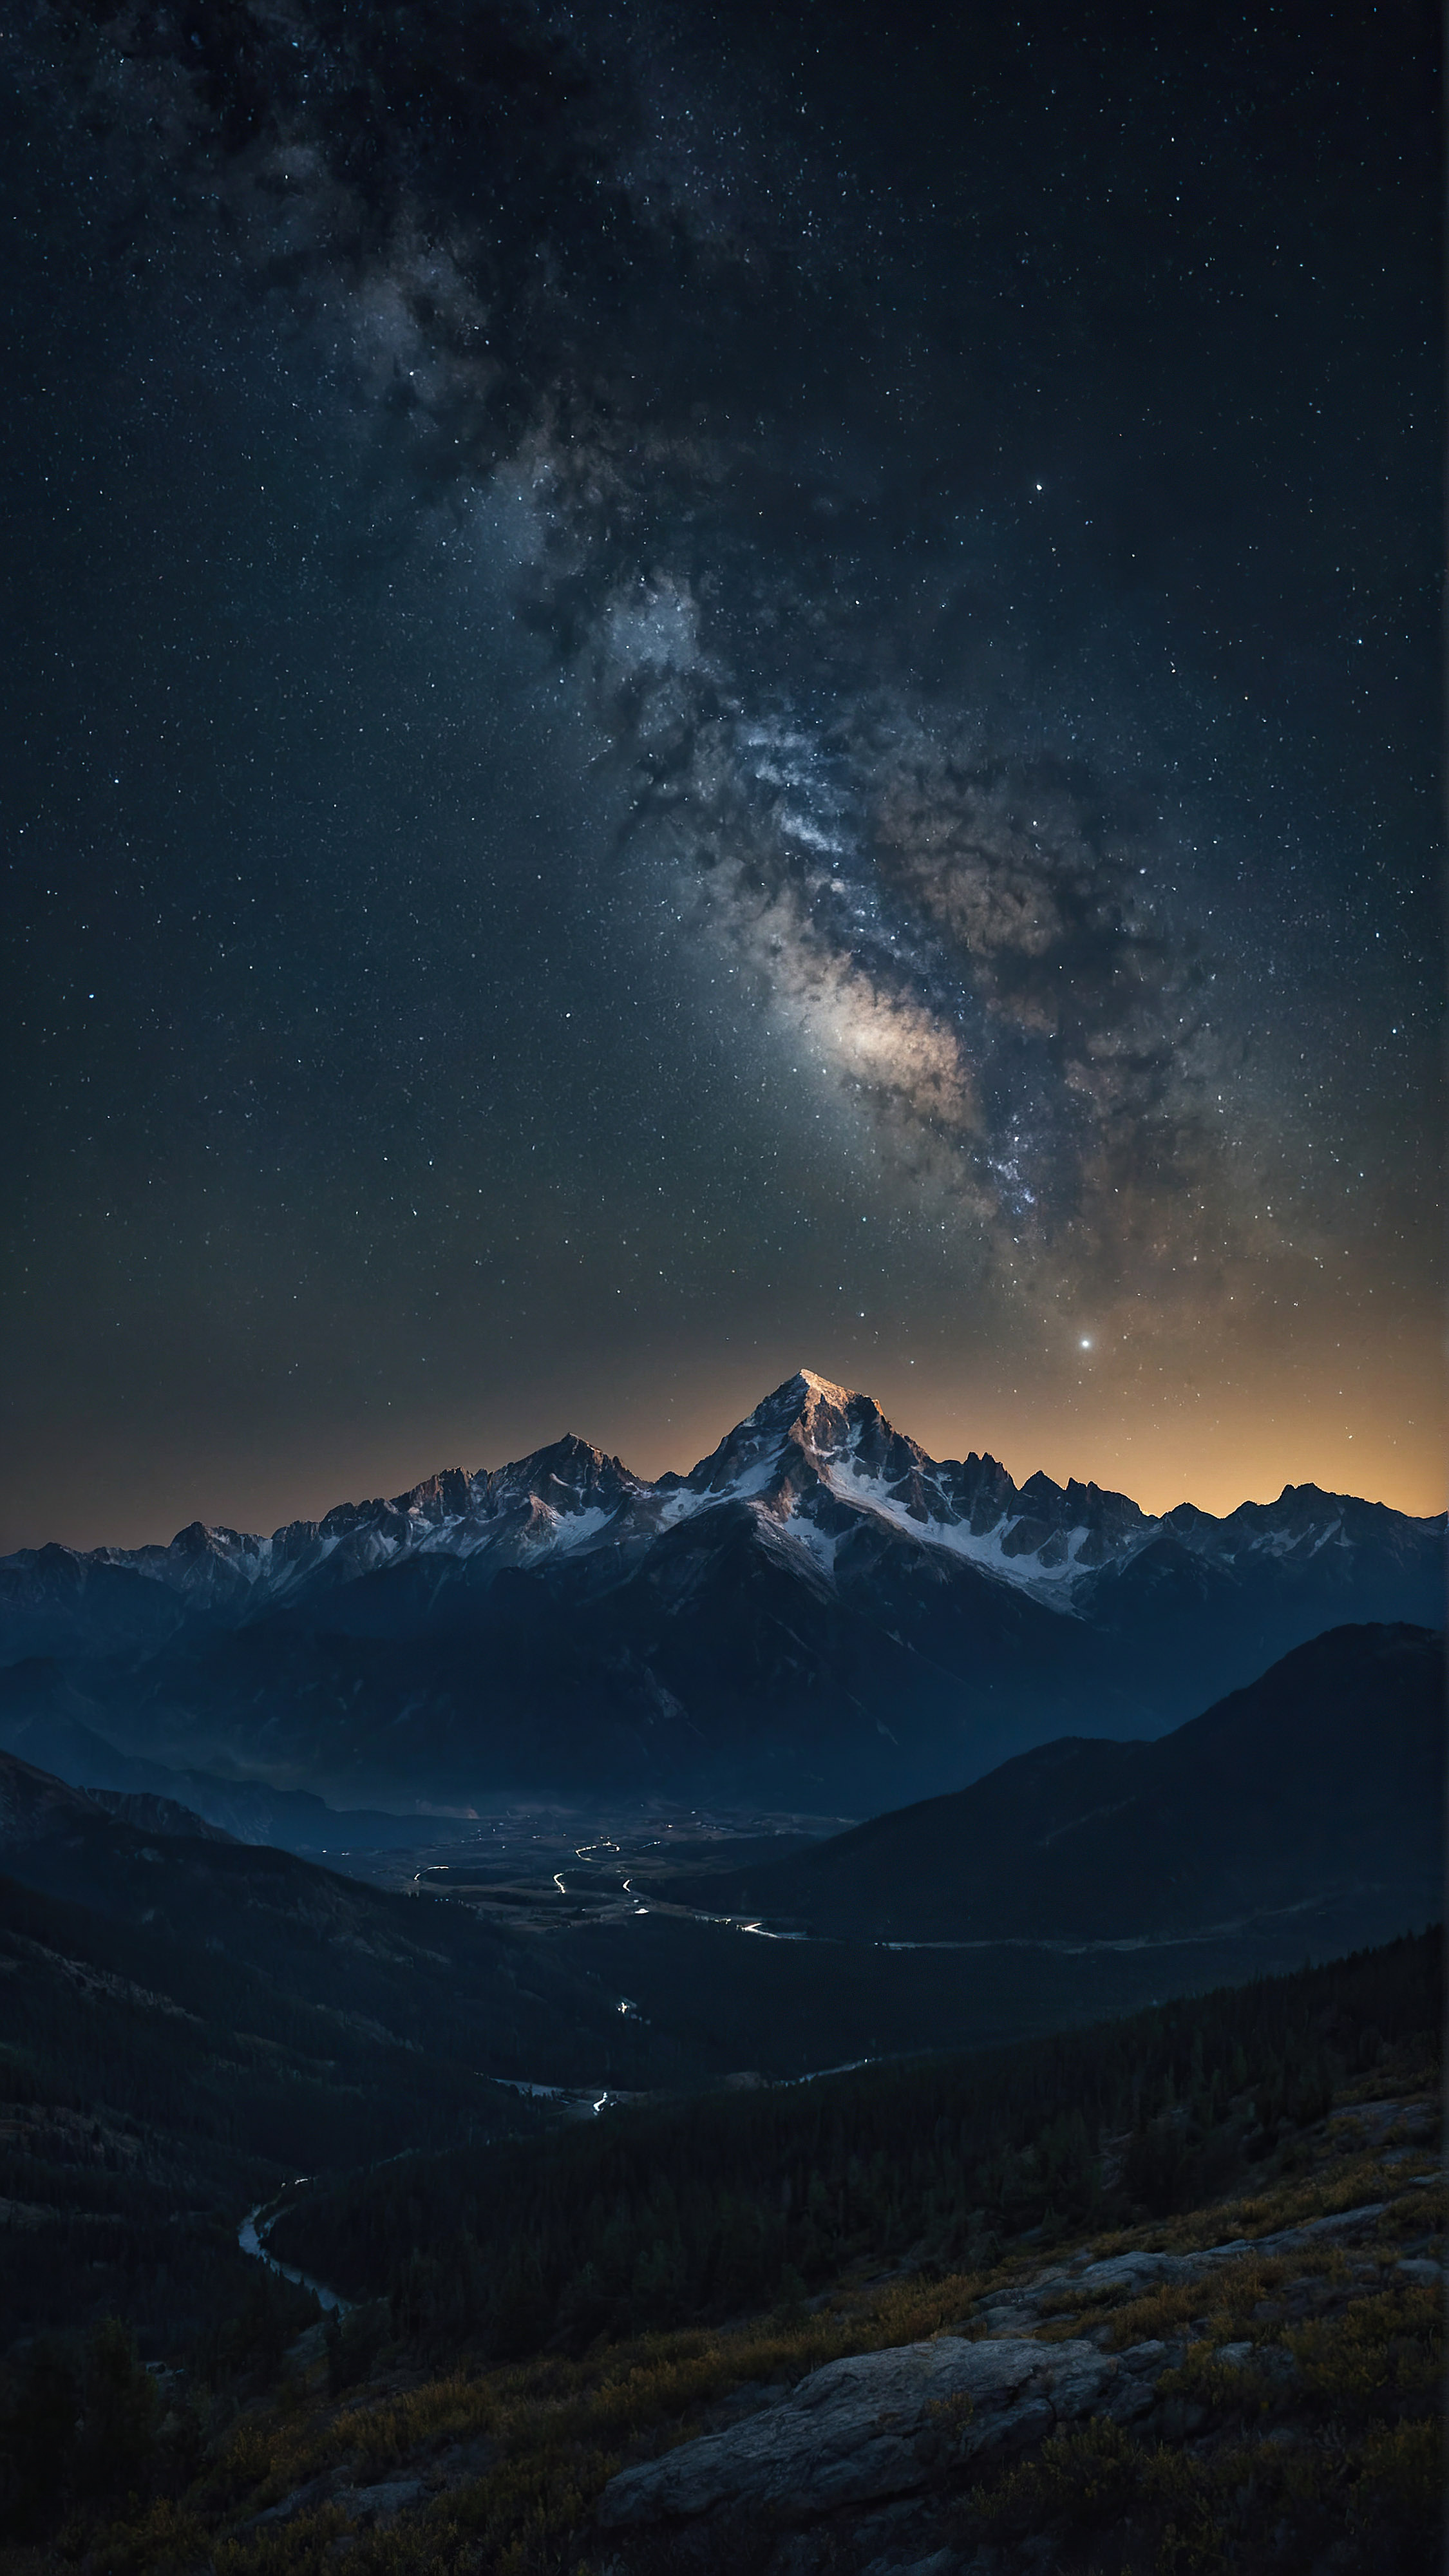 Téléchargez ce fond d'écran pour iPhone en 4K gratuitement, capturant une scène nocturne à couper le souffle d'une chaîne de montagnes accidentée sous un ciel étoilé, avec d'innombrables étoiles ajoutant à l'atmosphère sereine et majestueuse du paysage.